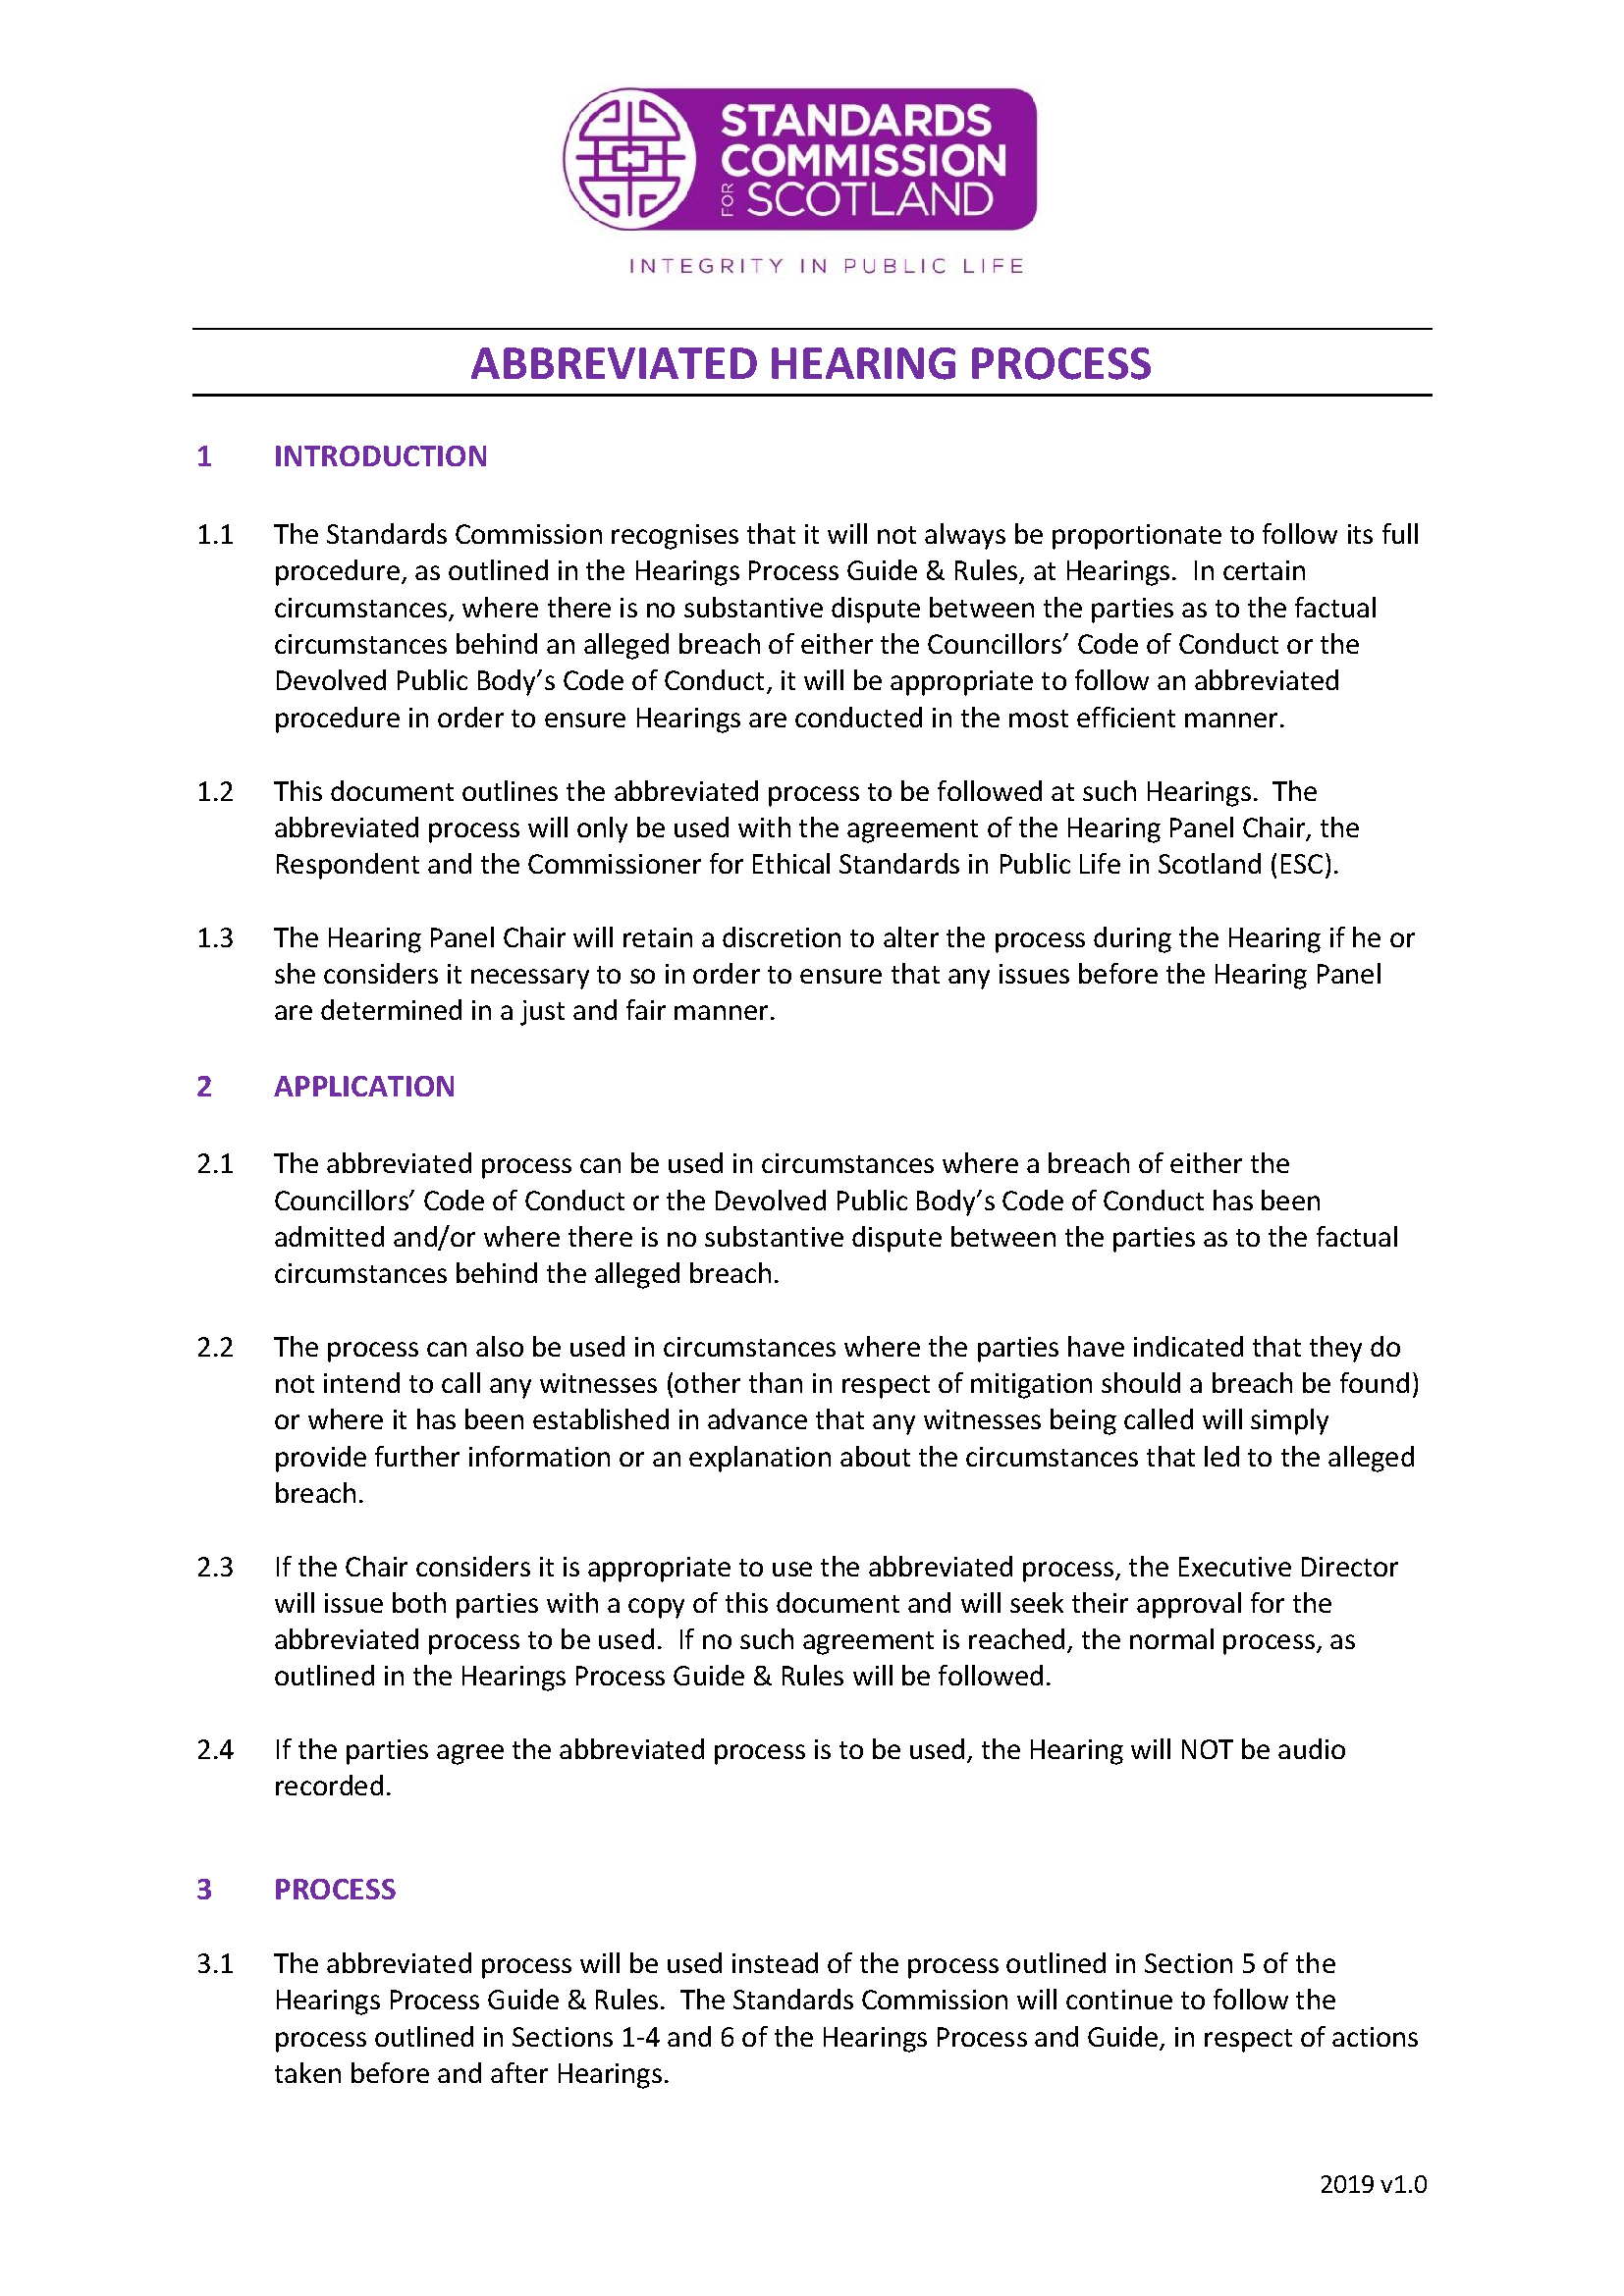 Abbreviated Hearing Process